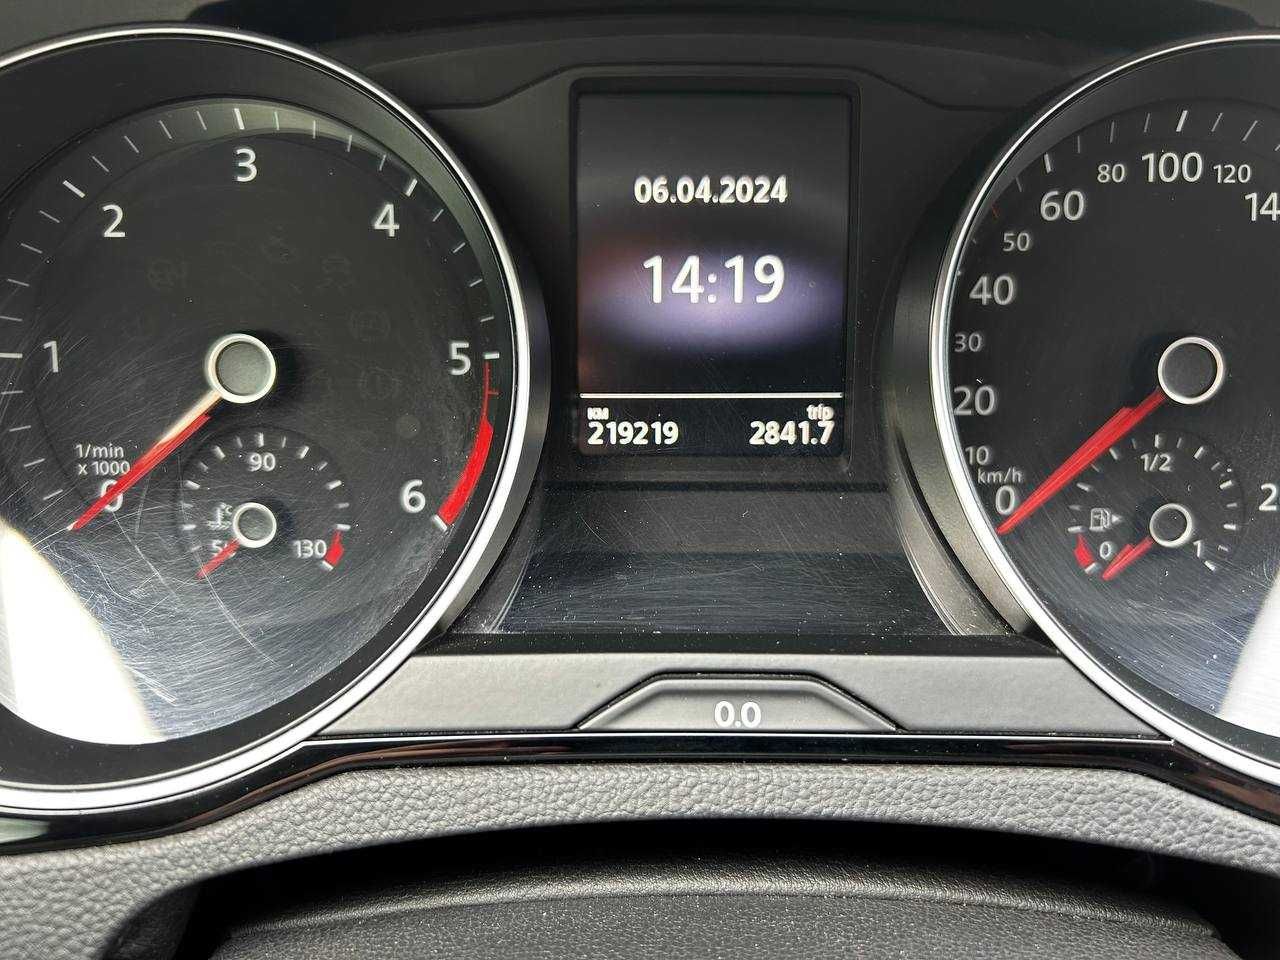 Авто Volkswagen Passat b8 2015р. 2,0 дизель, обмін (внесок від 20%)